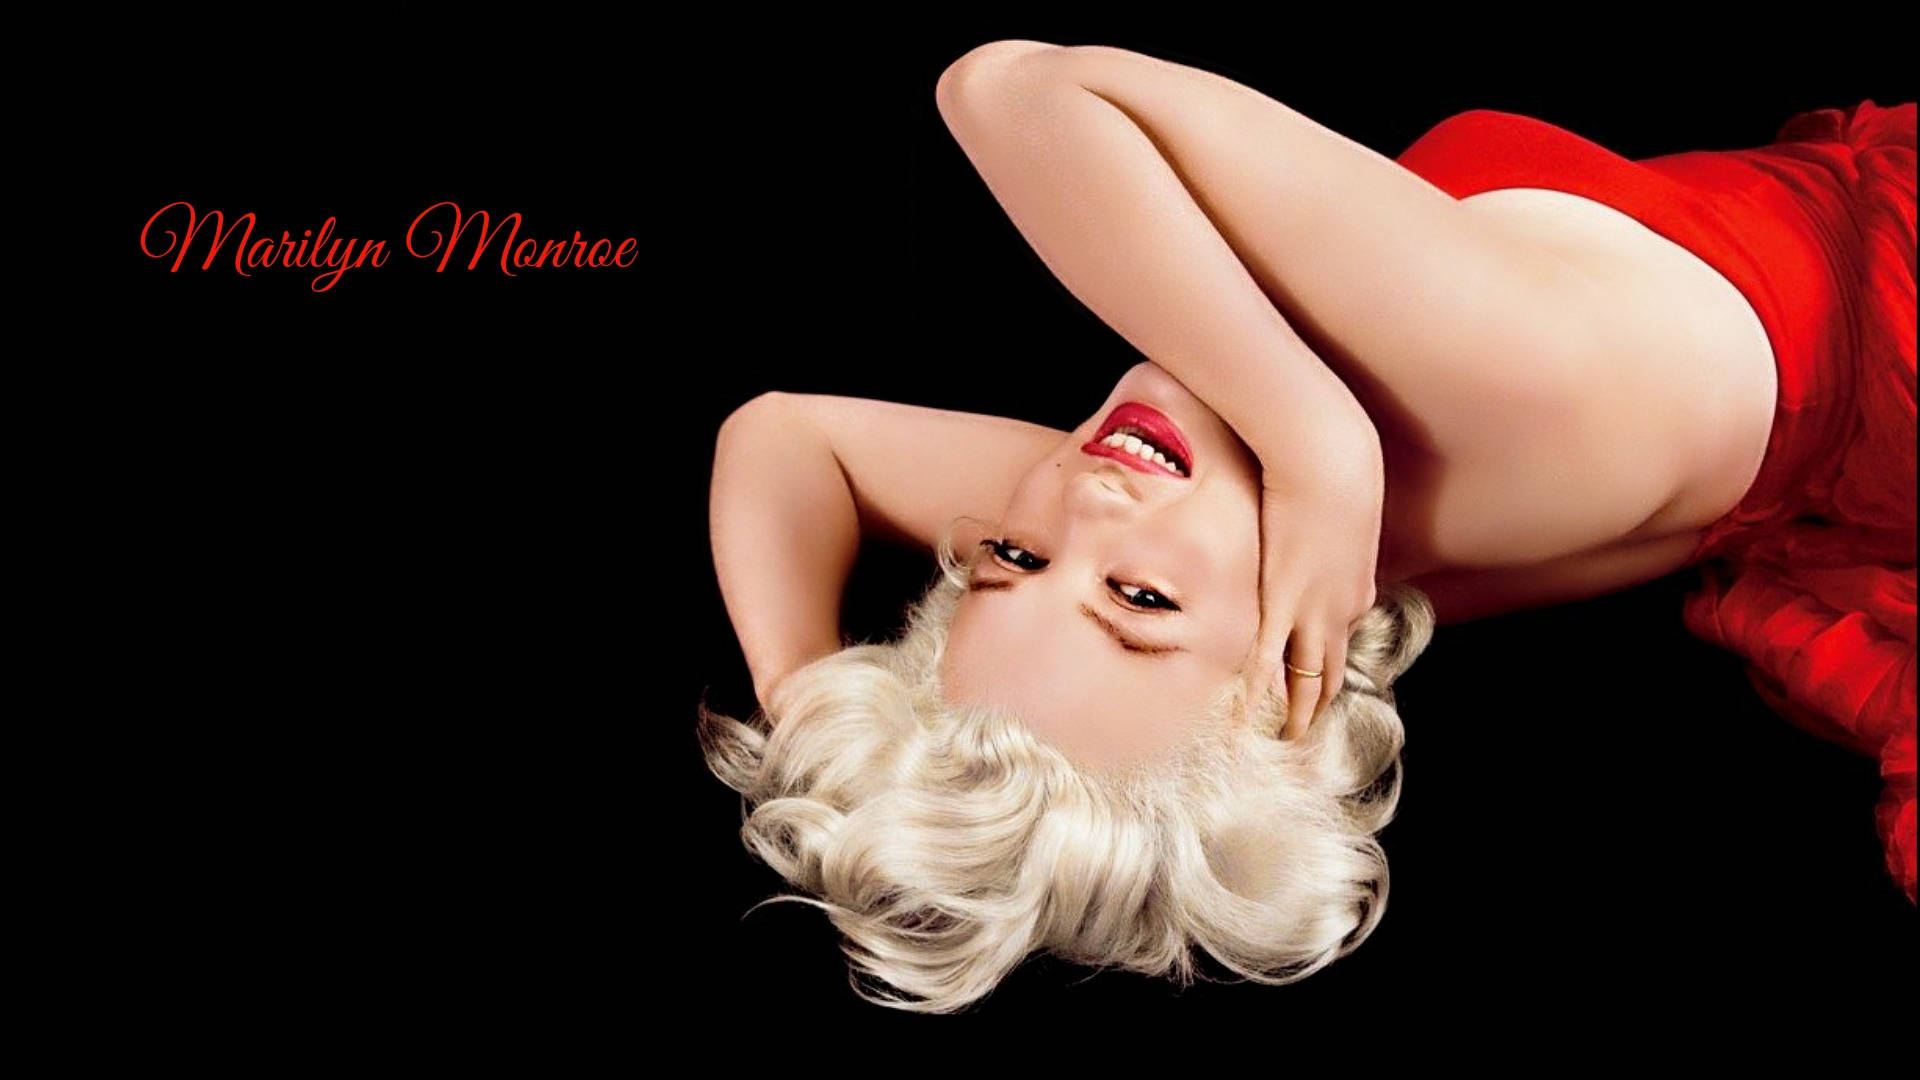 Sexet Marilyn Monroe i rød kjole Wallpaper